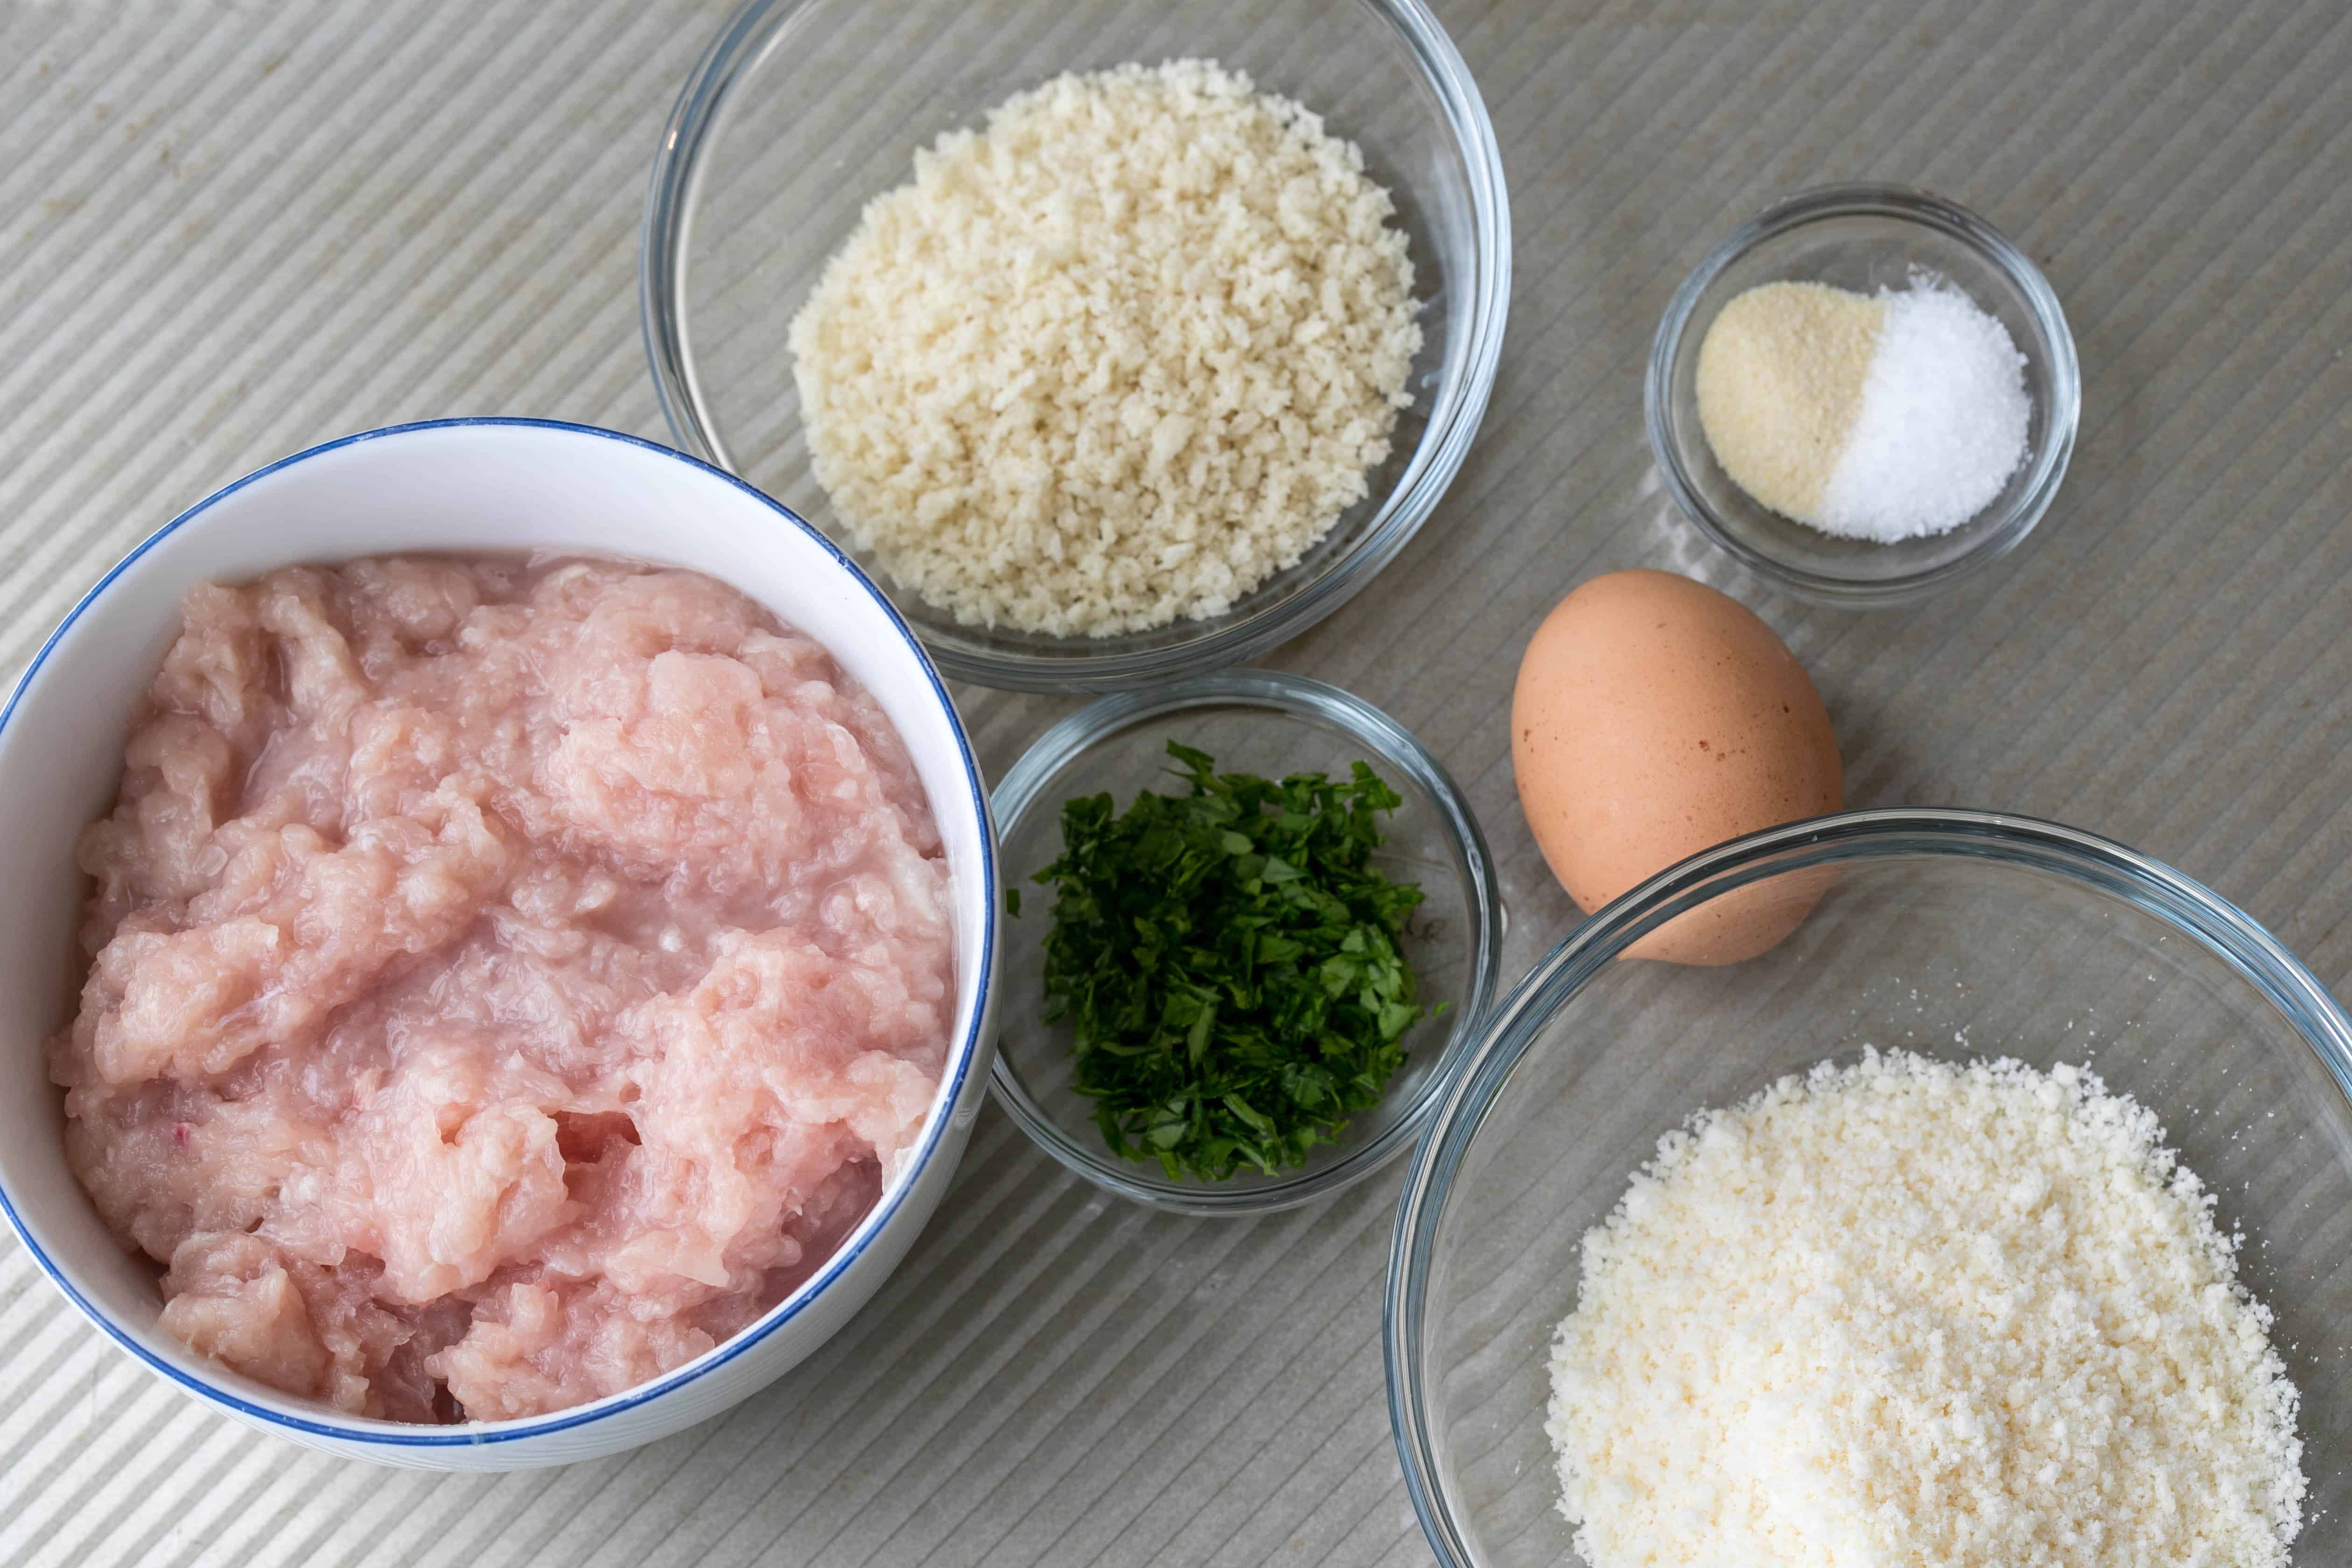 ingredients for chicken parm meatballs: ground chicken, breadcrumbs, egg, parmesan cheese, parsley, garlic powder, salt